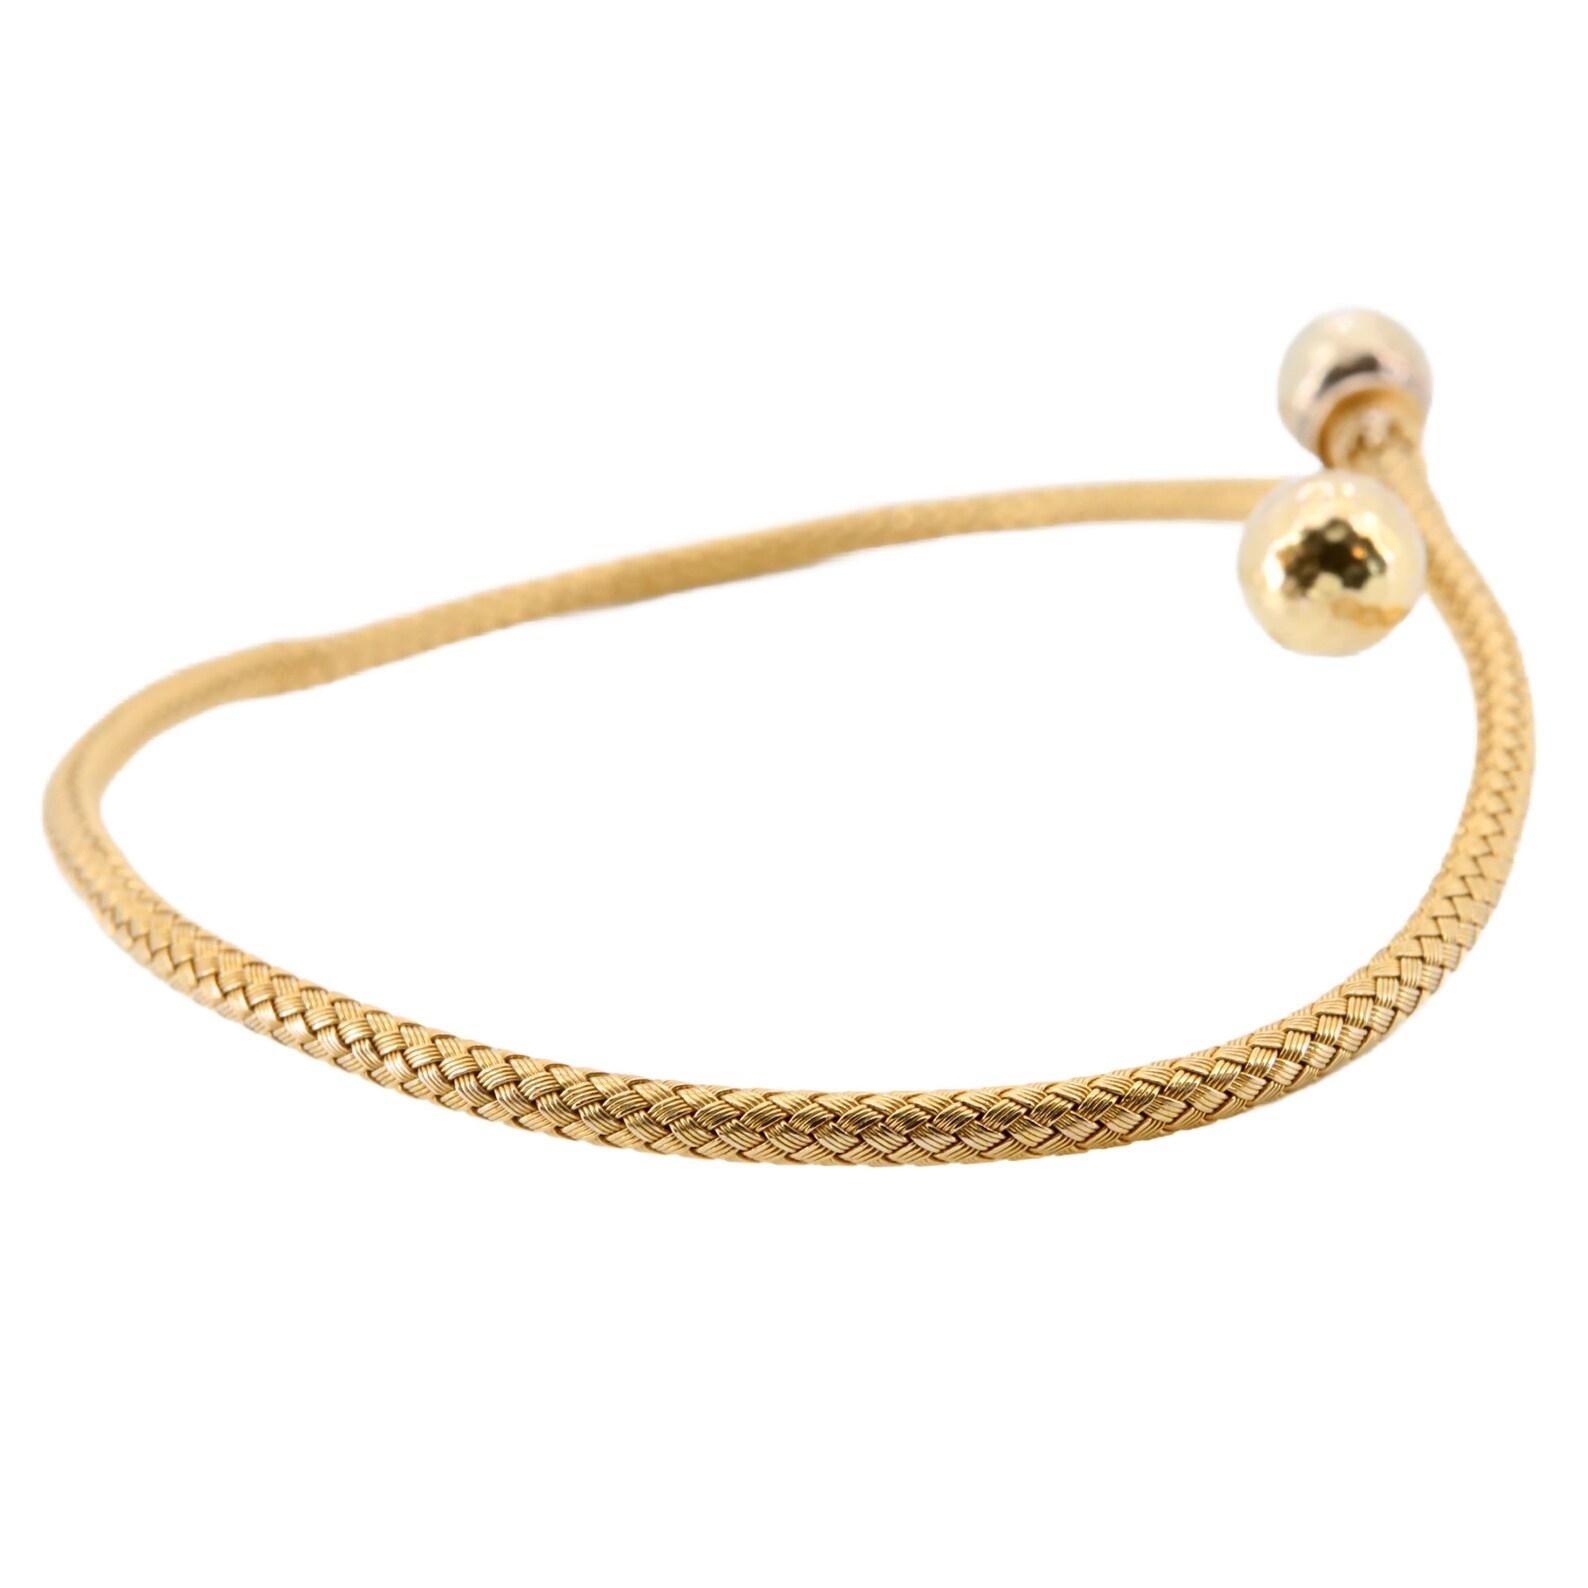 Eine italienische Etruscan Revival Stil viktorianischen Zeit Armband. Bestehend aus einem gewebten, flexiblen Goldarmreif im Crossover-Stil. Mit gehämmerten goldenen Kugelenden und aufgesetztem Cannetille-Dekor vervollständigt. 

In ausgezeichnetem